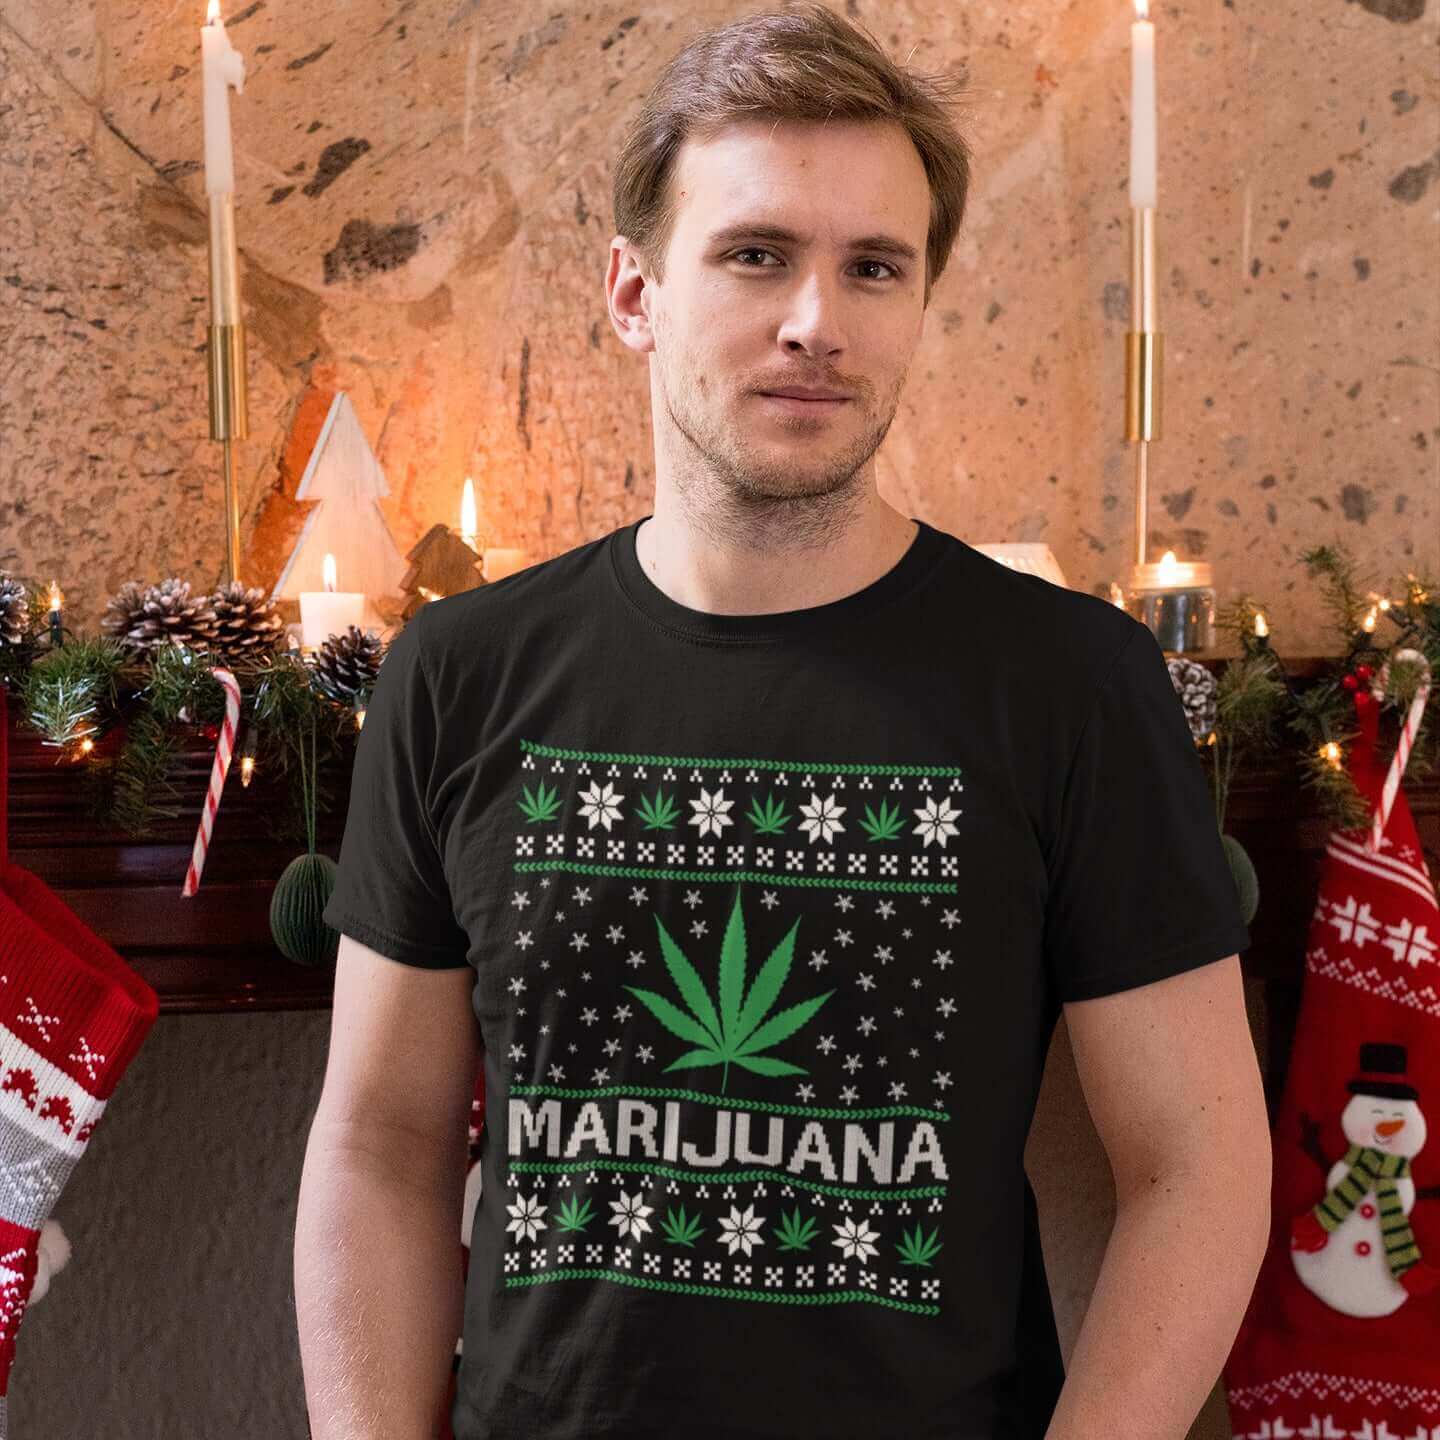 young man wearing marijuana print tshirt at christmas